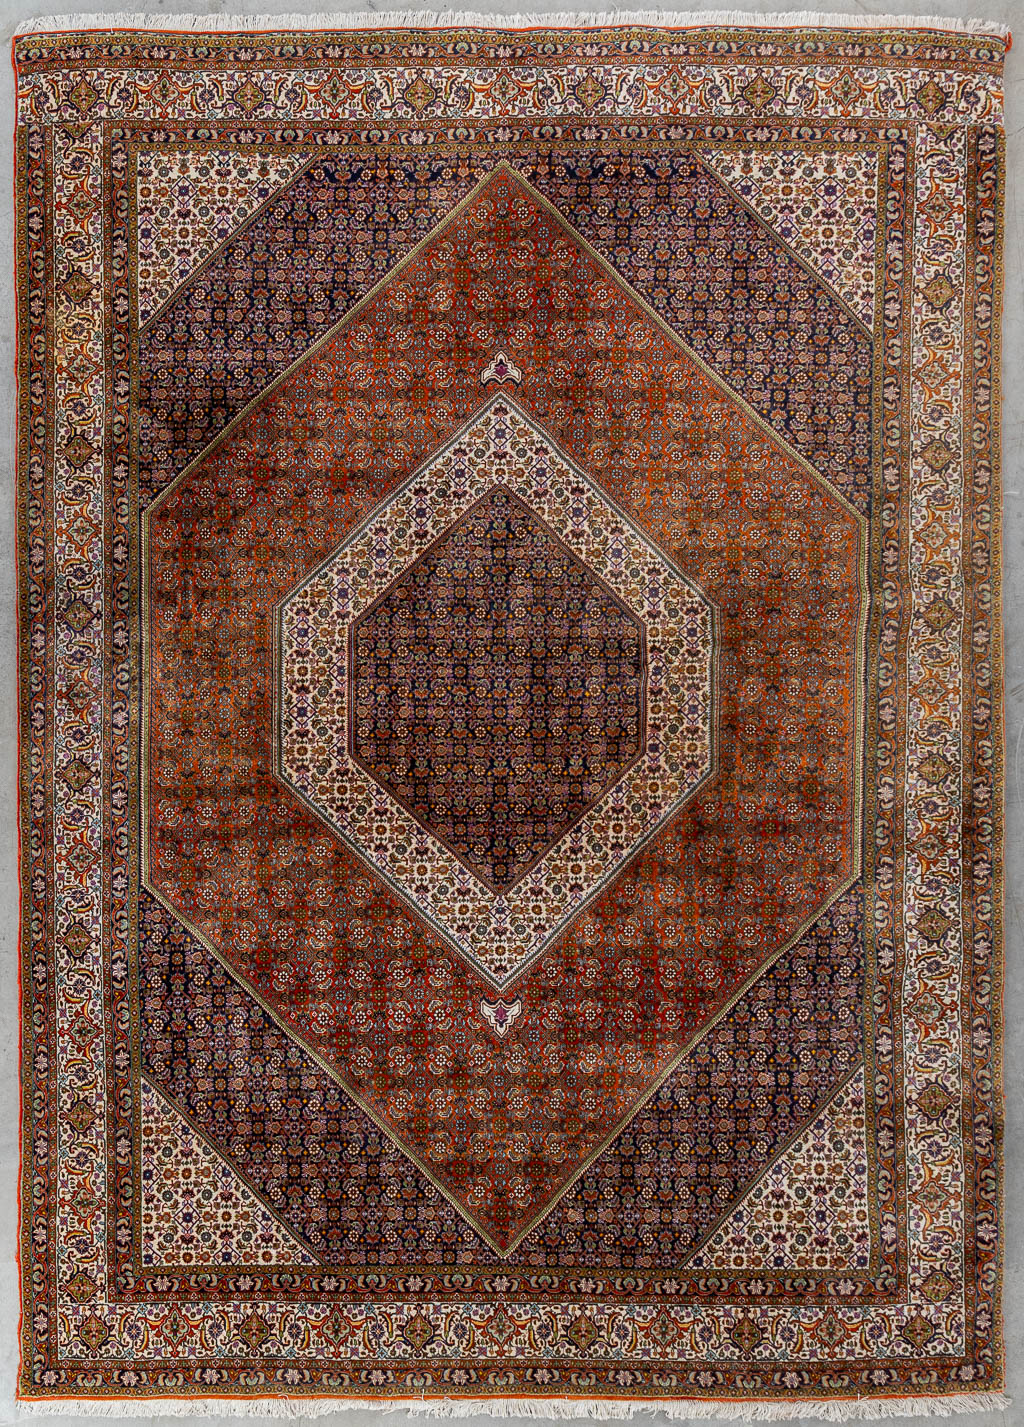 Lot 206 Een Oosters handgeknoopt tapijt, Bidjar. (L:354 x W:253 cm)